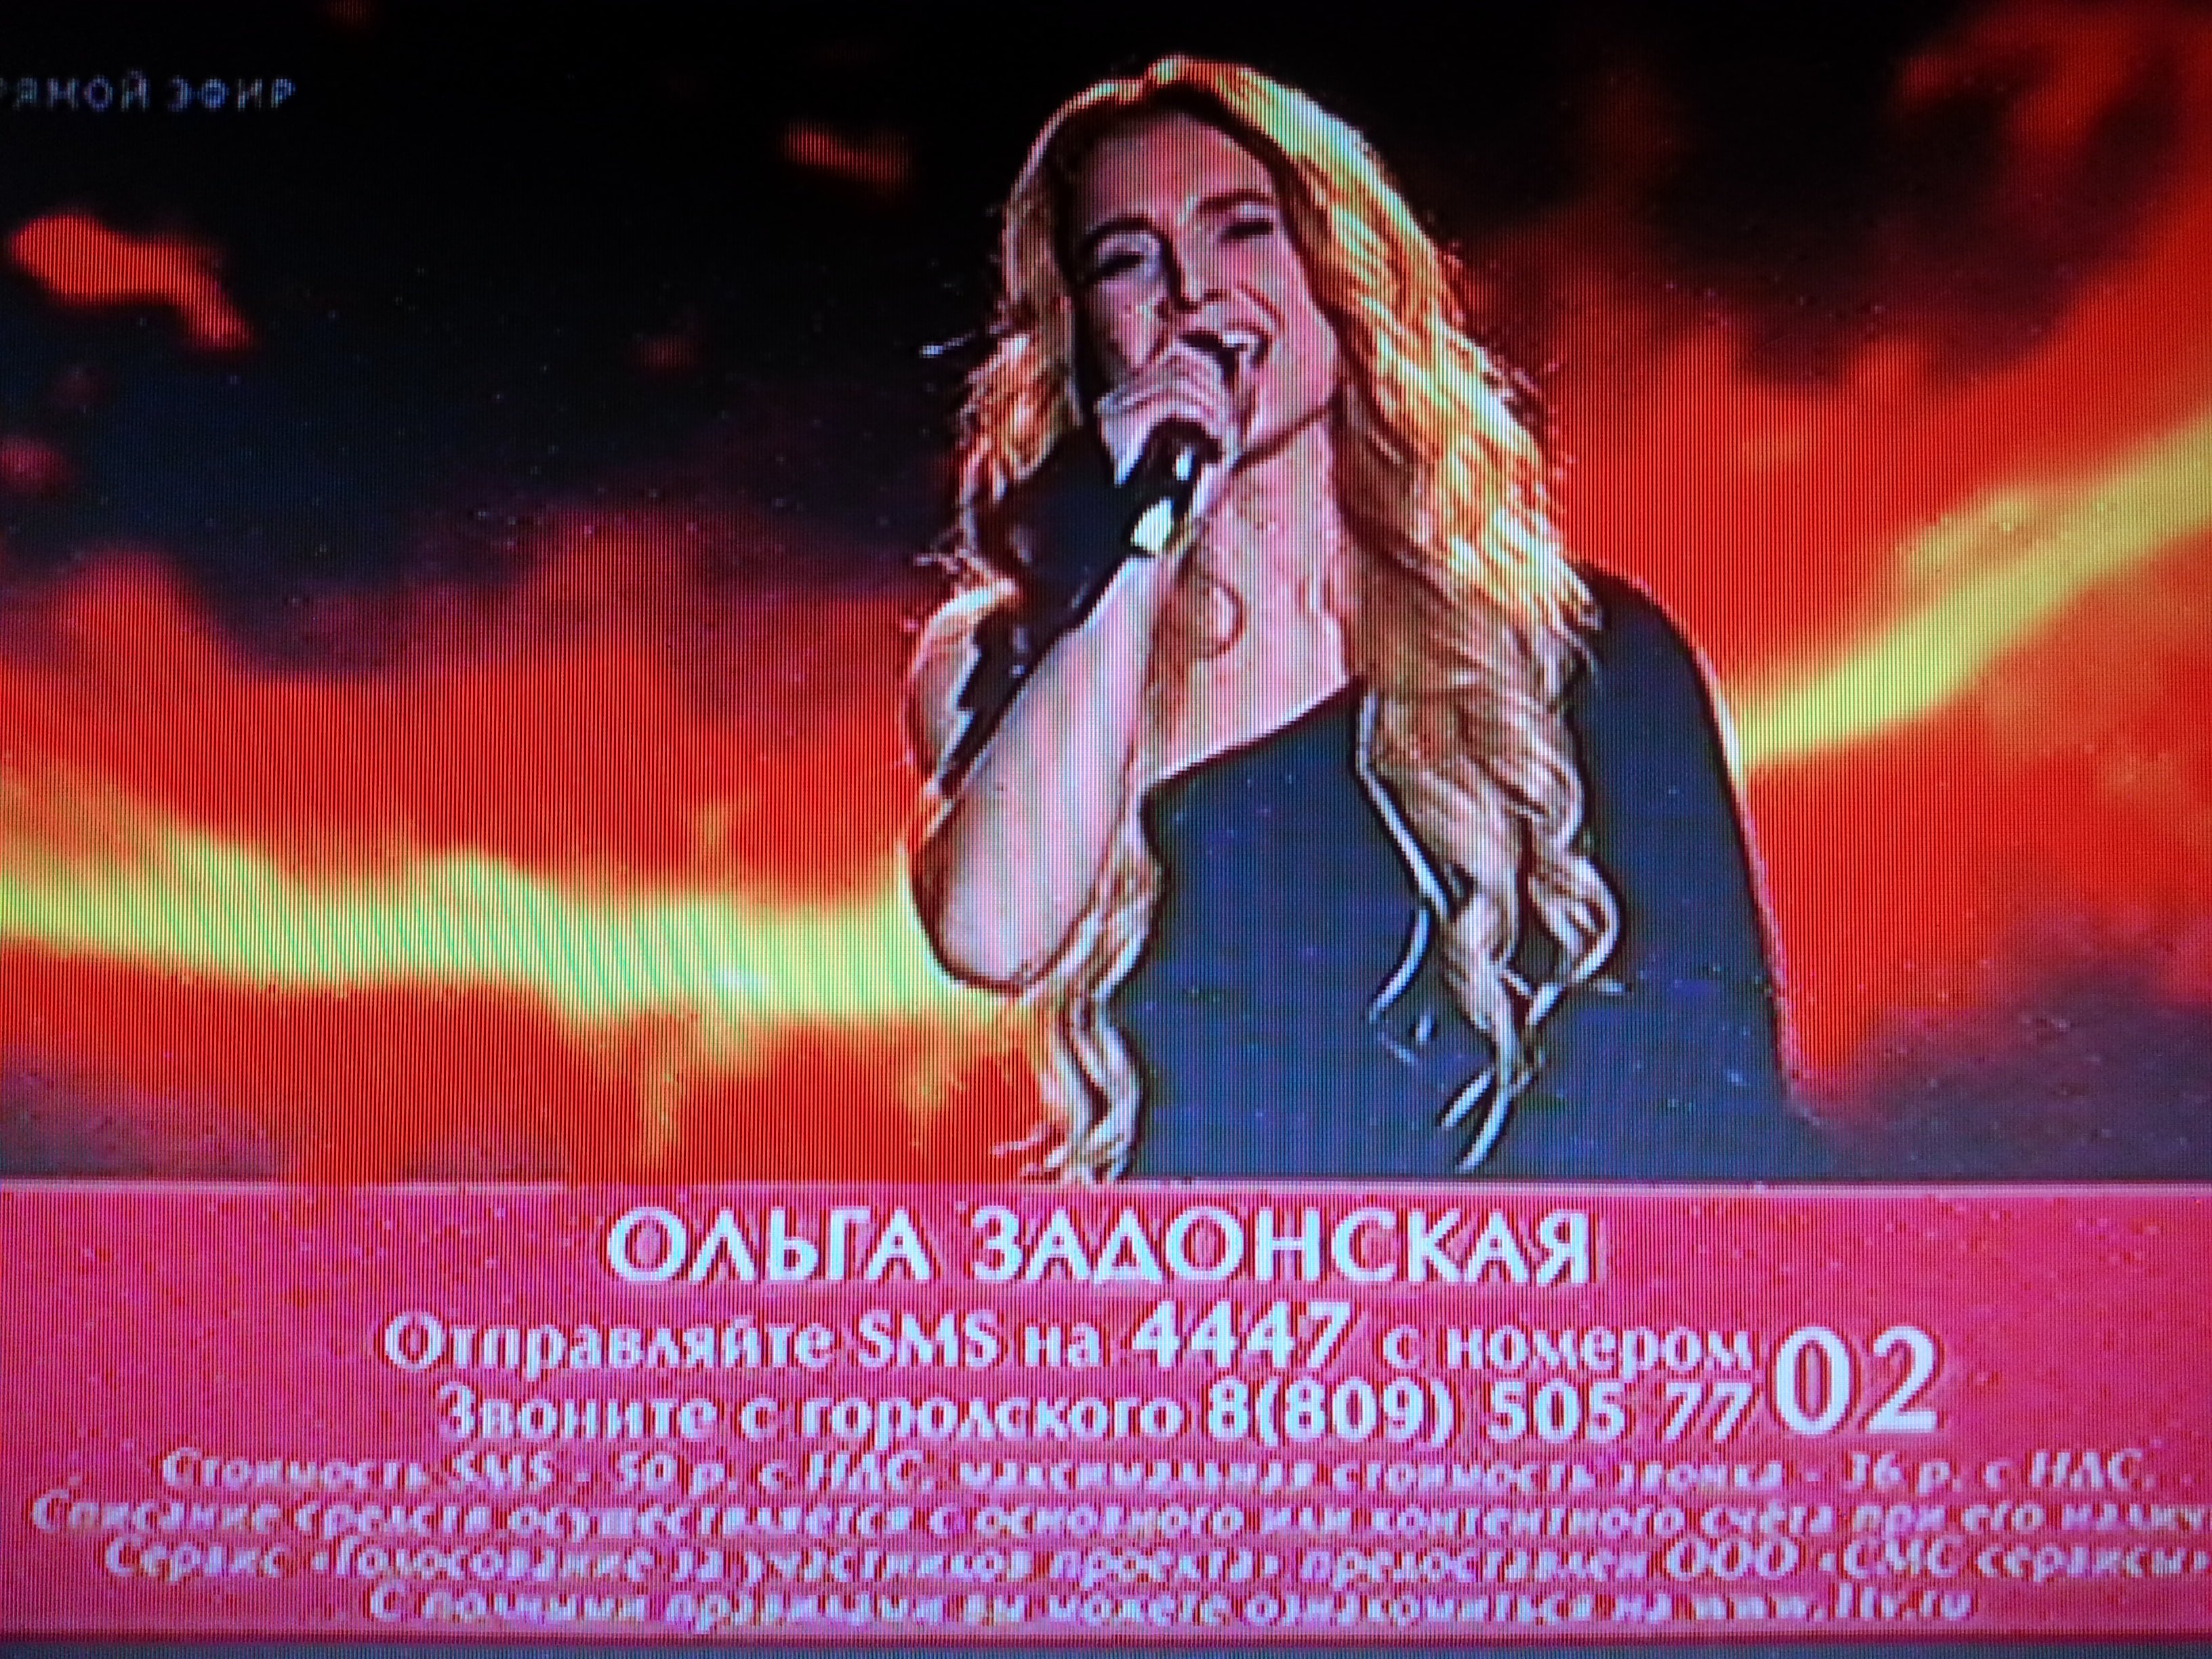 Онлайн трансляция финала шоу Голос на ОРТ (25.12.15)